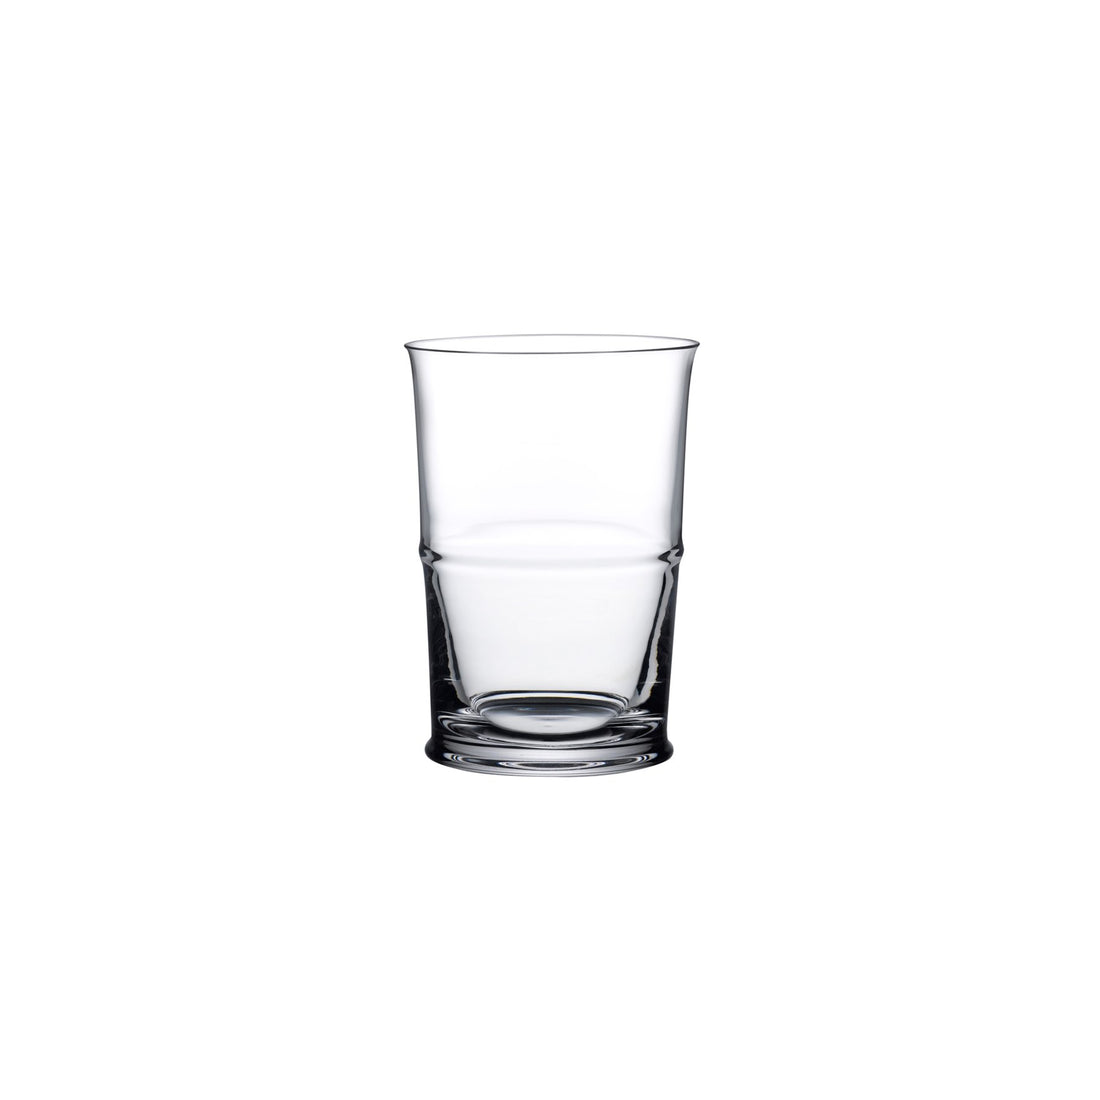 https://international.nudeglass.com/cdn/shop/products/Plain_-_Jour_Short_Water_Glass_-_22342_1100x.jpg?v=1650633427